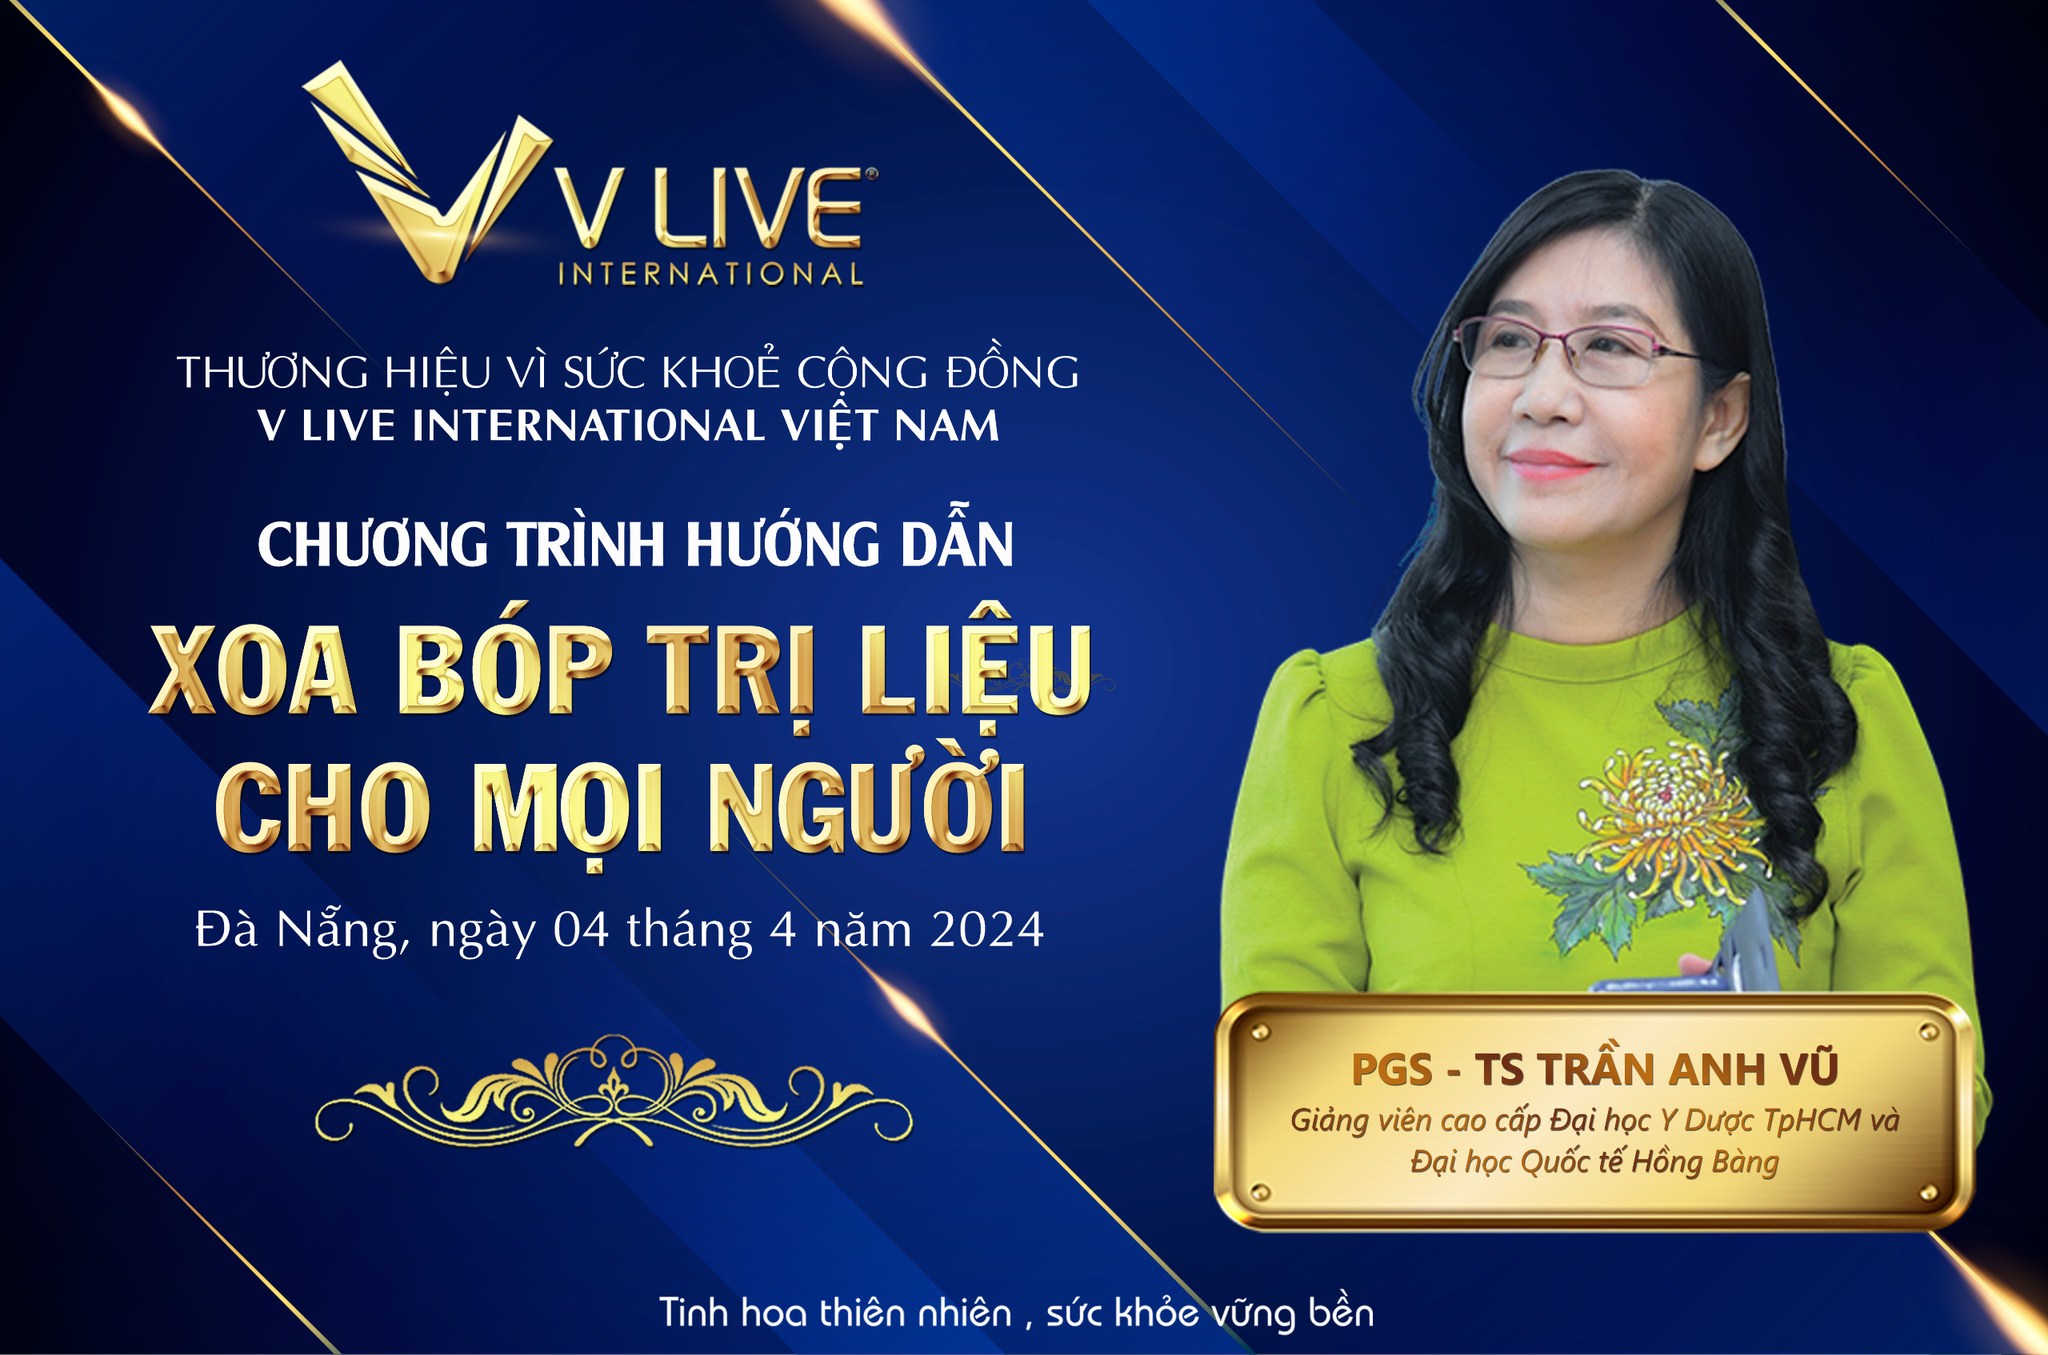 V Live cùng PGS.TS Trần Anh Vũ đã thực hiện chương trình hướng dẫn “Xoa bóp trị liệu dành cho mọi người”